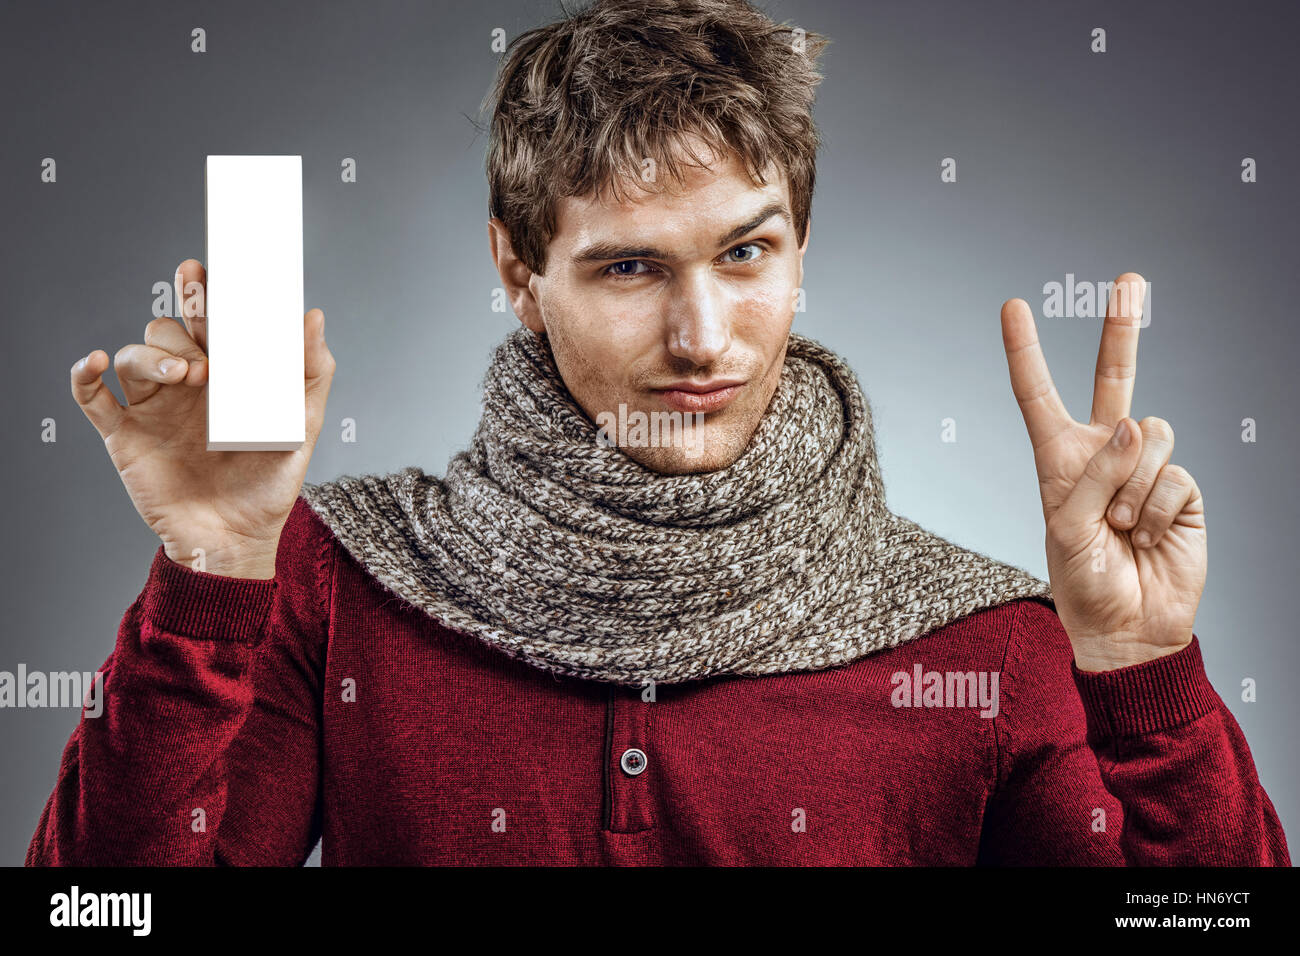 Man holding boîte blanche de médecine et montre deux doigts. Photo de l'homme malsain foulard enroulé. Concept de soins de santé Banque D'Images